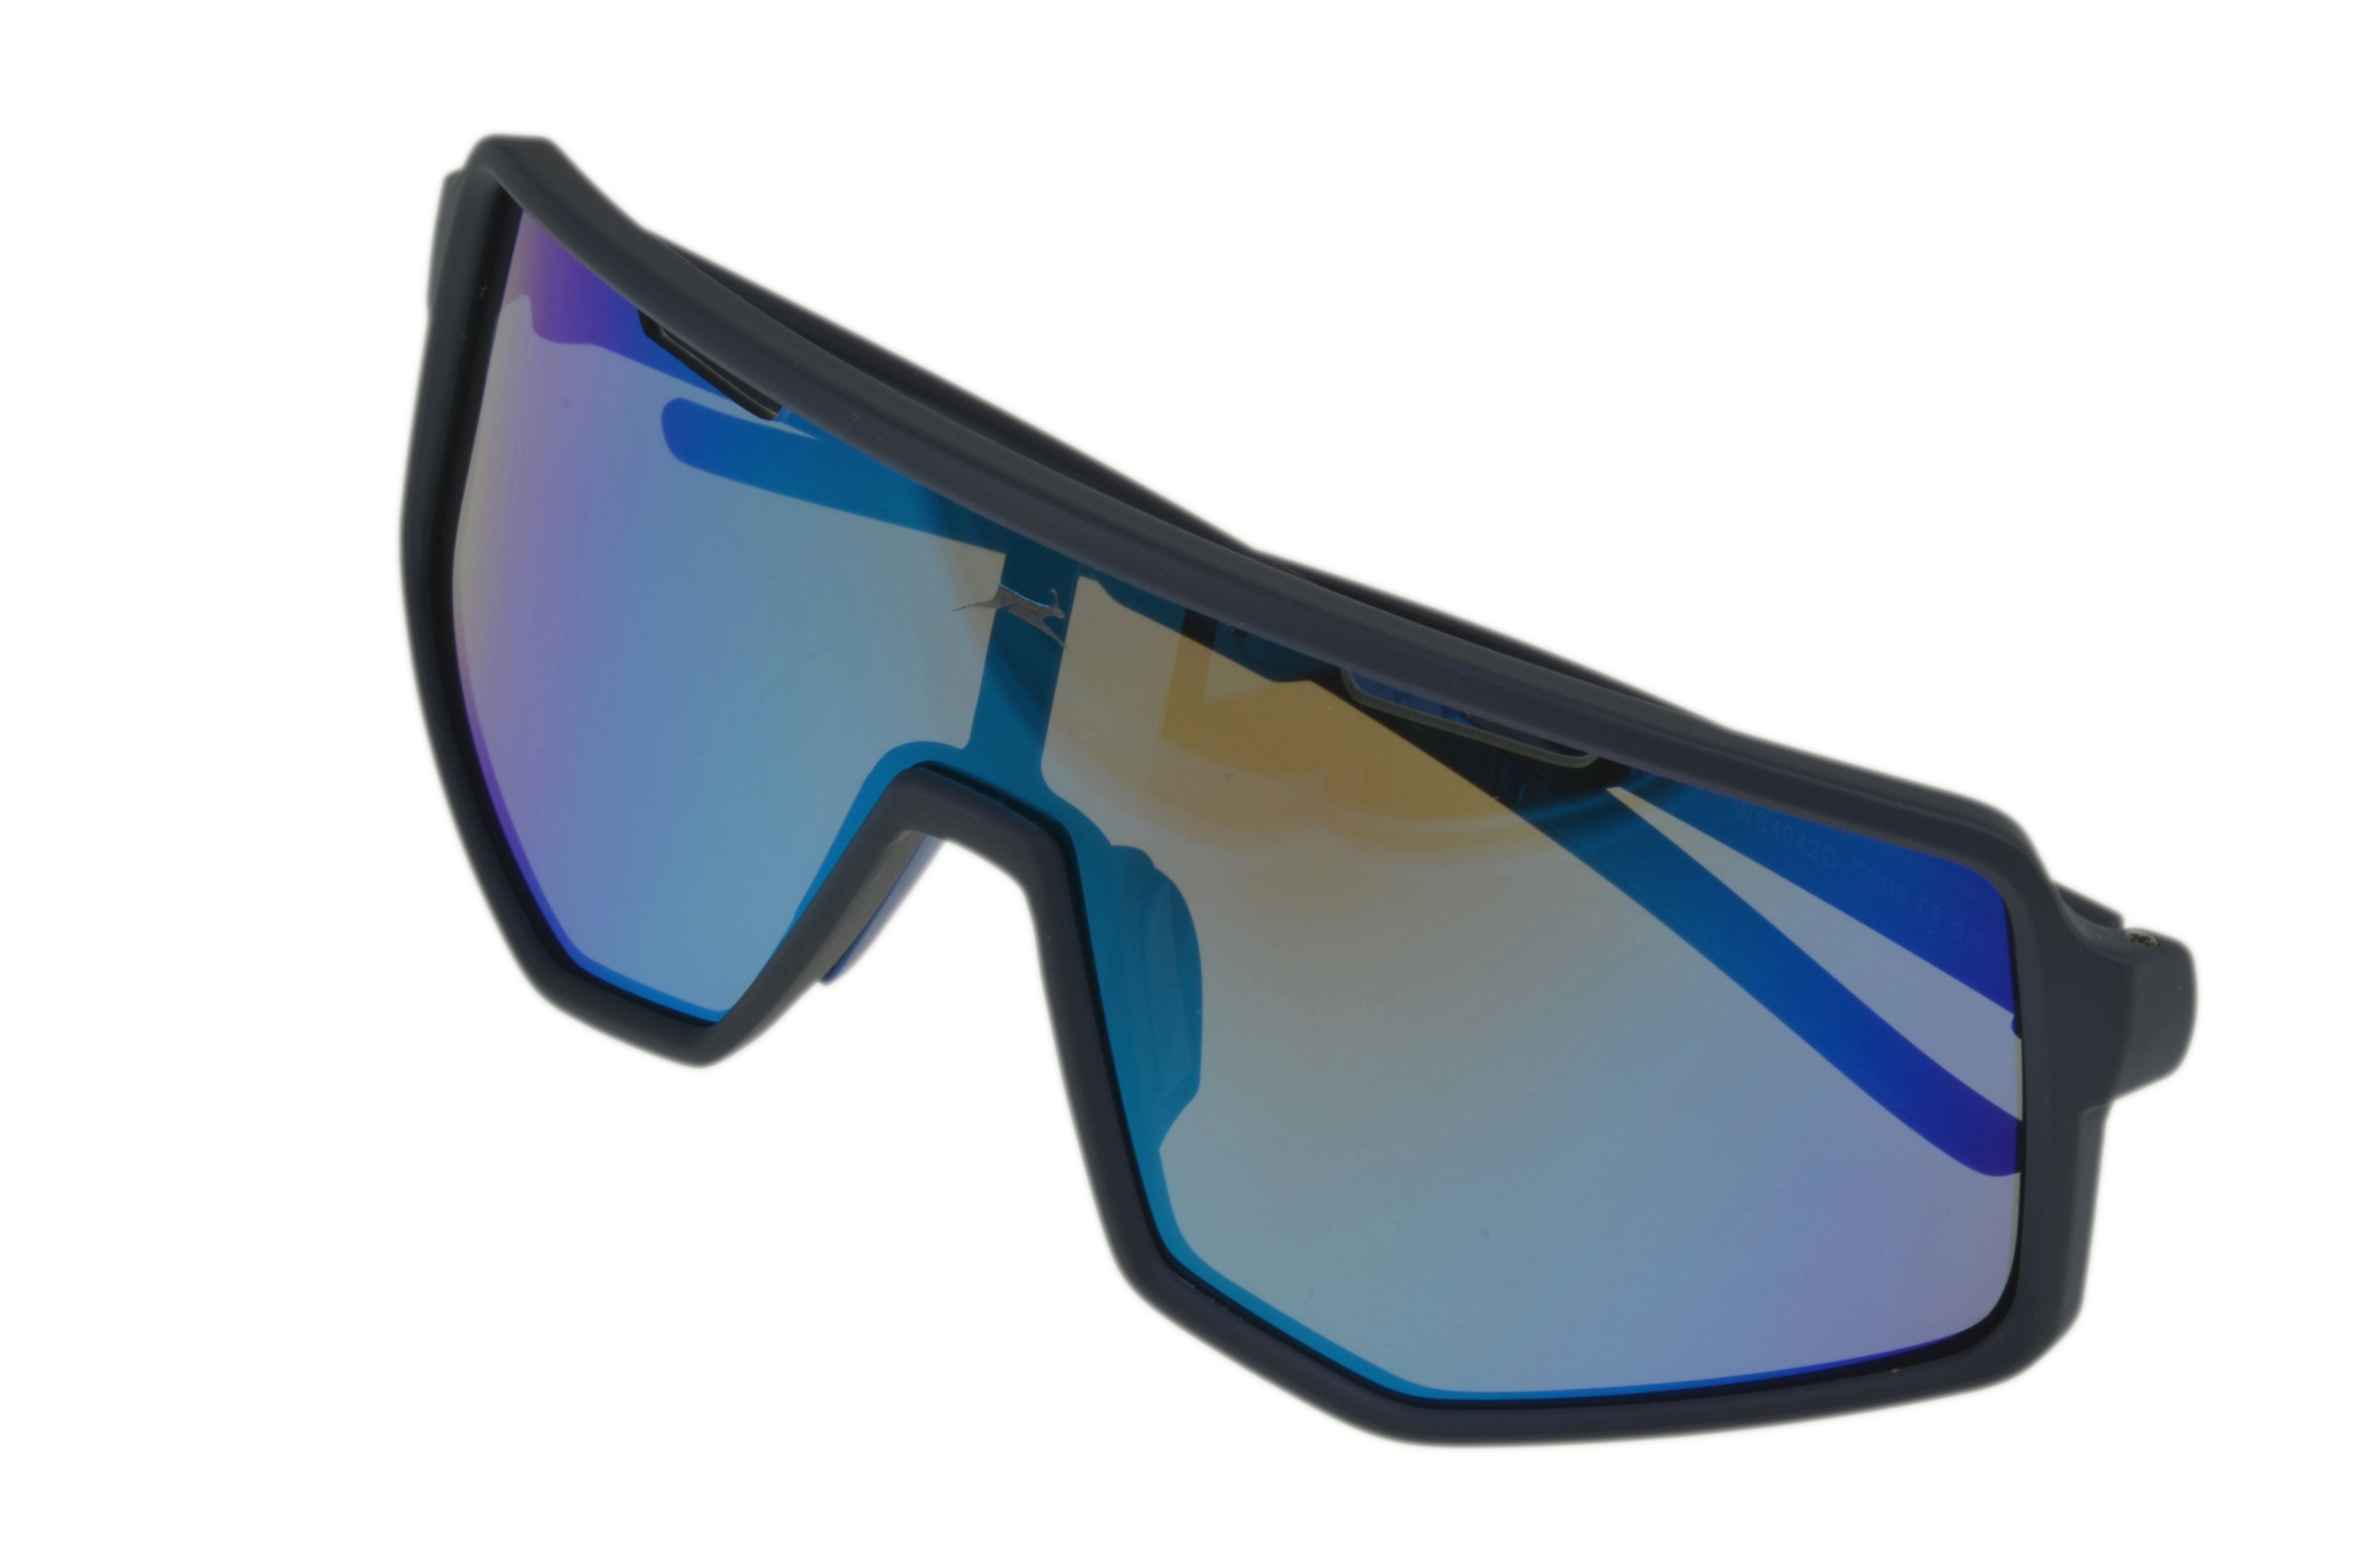 Herren Sonnenbrille schwarz-rot, Unisex lila, Gamswild Unisex, Skibrille grün Damen TR90 WS4042 Fahrradbrille Sonnenbrille schwarz-blau,